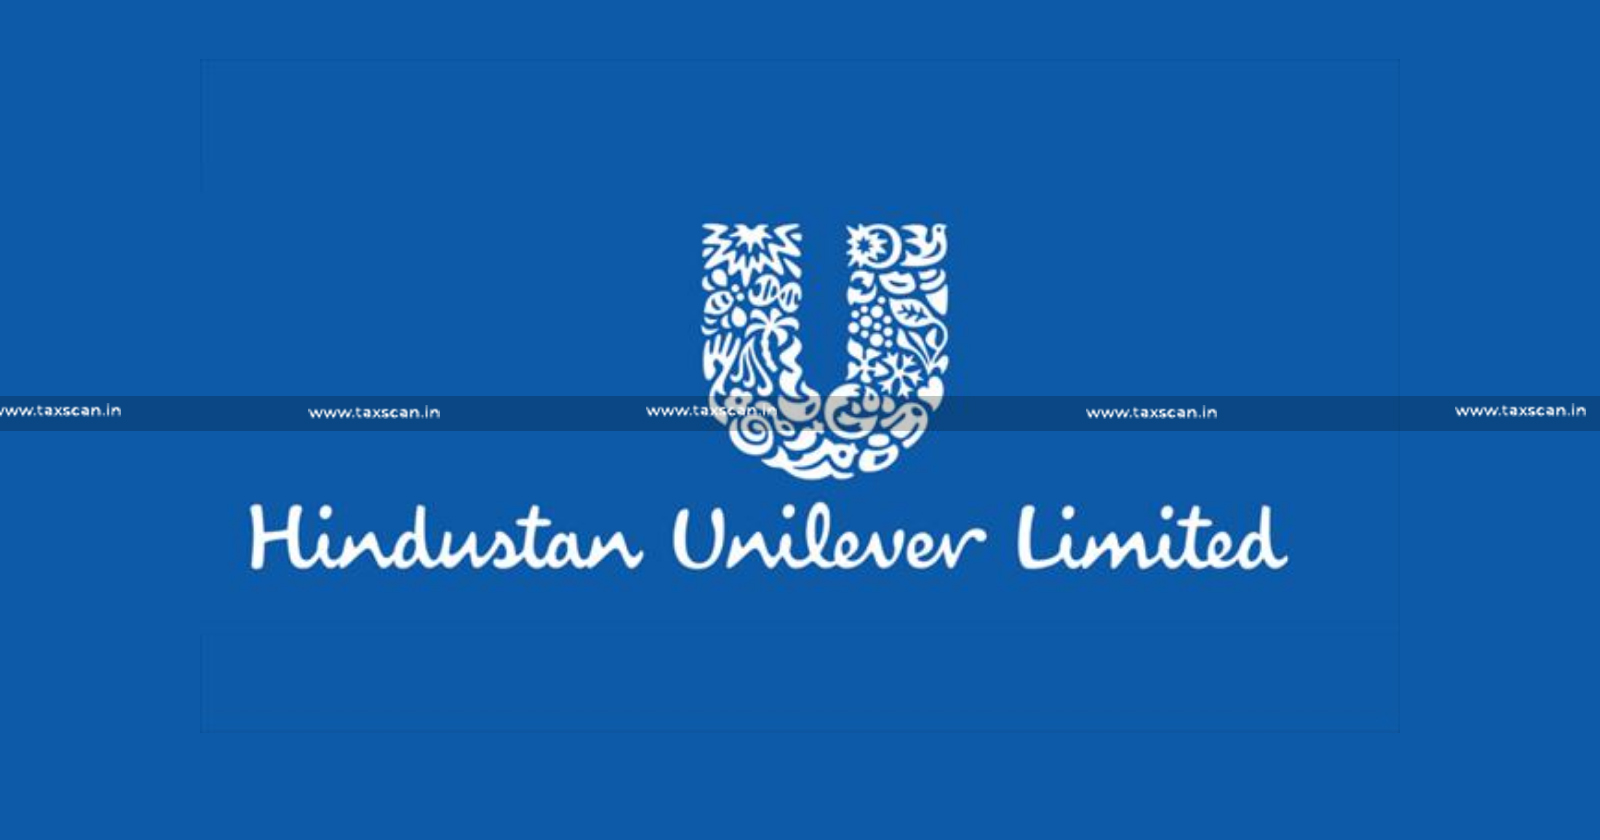 CA Vacancy in Unilever - CA Hiring in Unilever - CA Opportunities in Unilever - CA Careers in Unilever - Vacancy in Unilever - taxscan